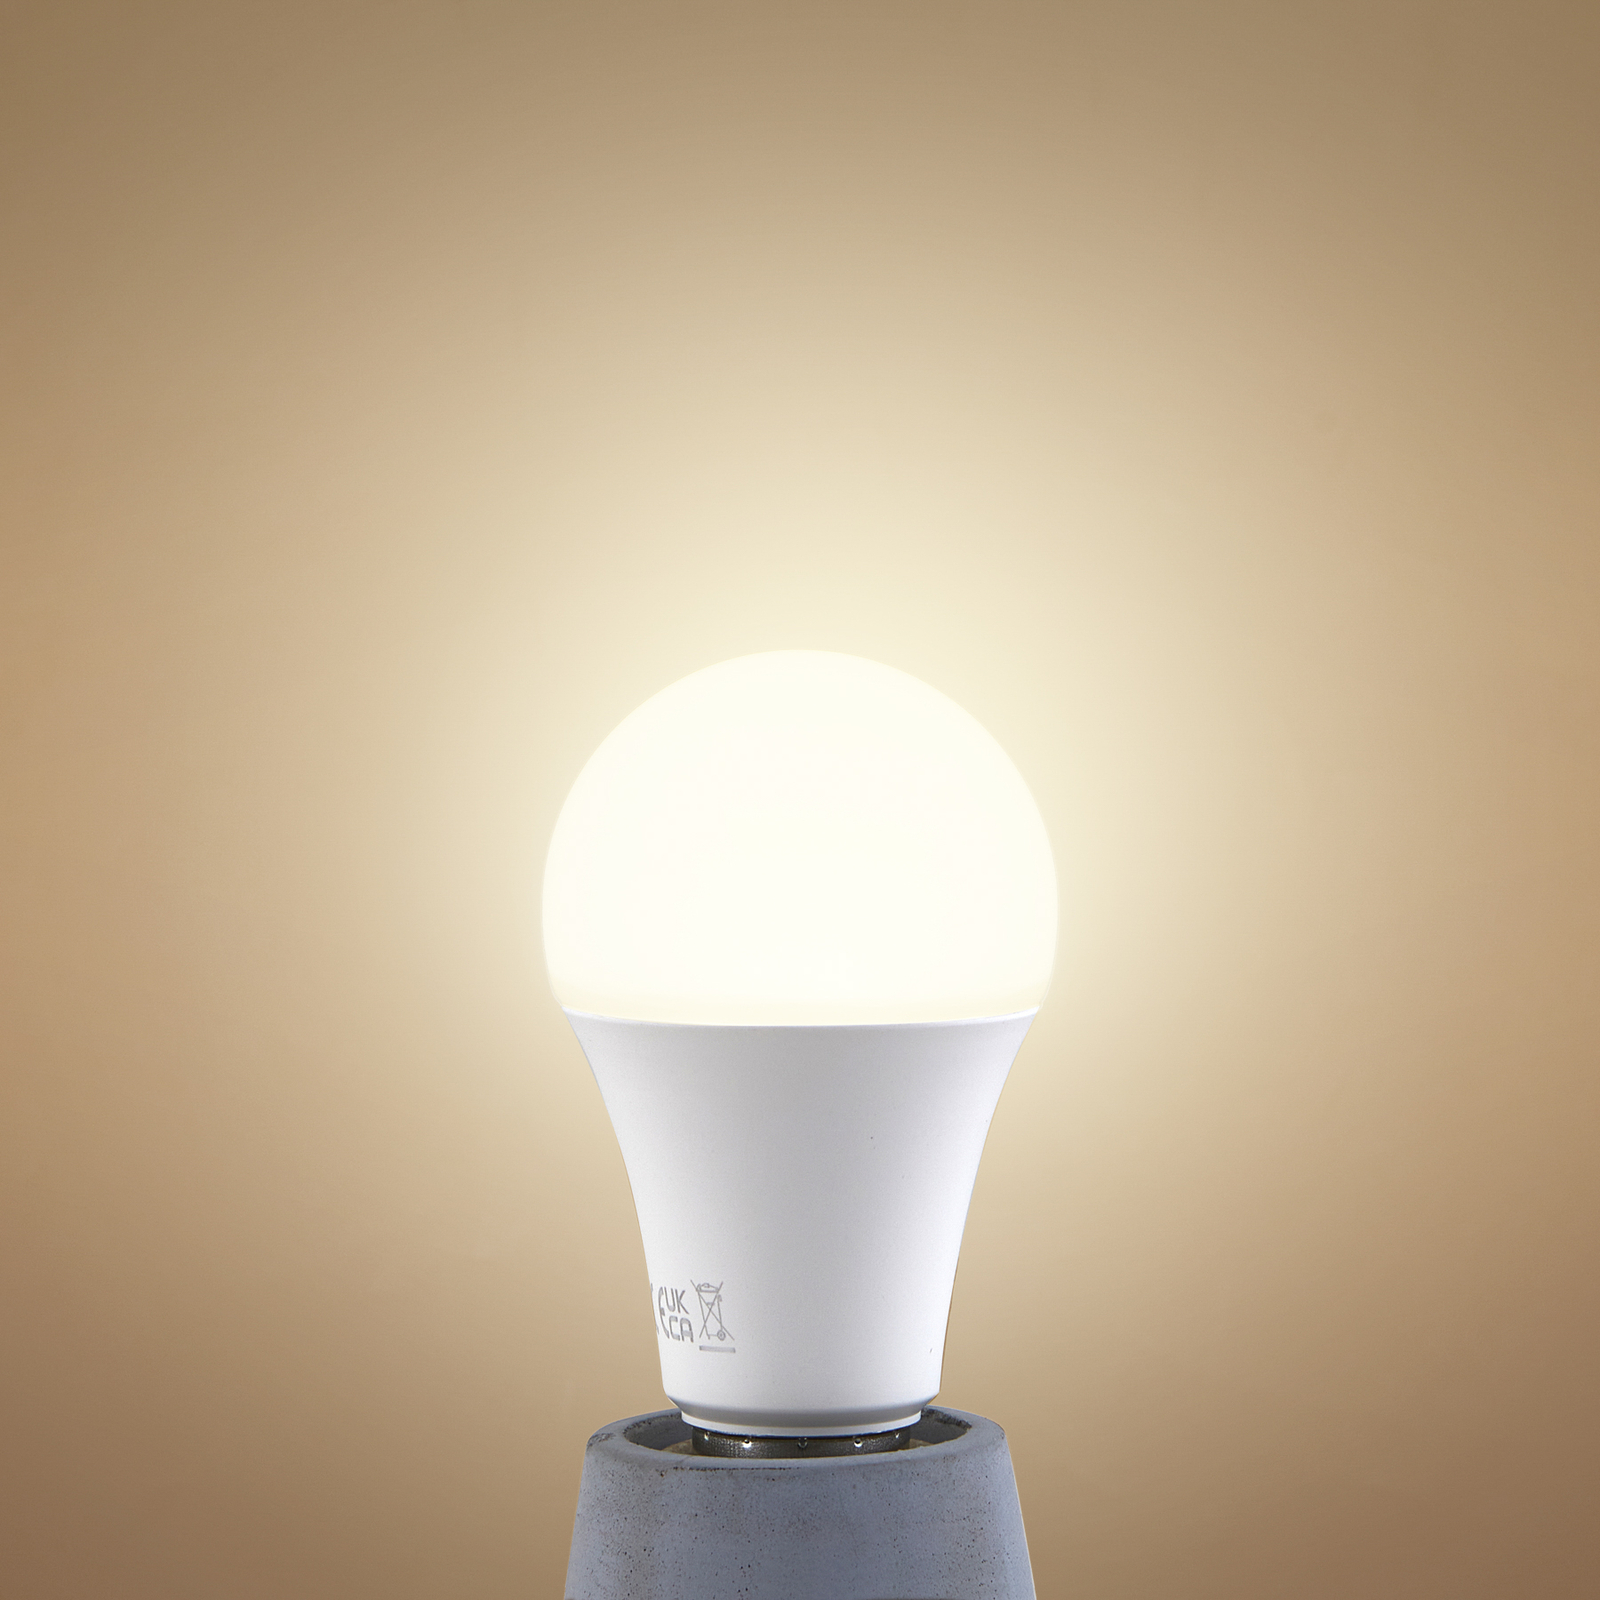 LED žiarovka, opál, E27, A60, 4,3 W, 2700K, 806 lumenov